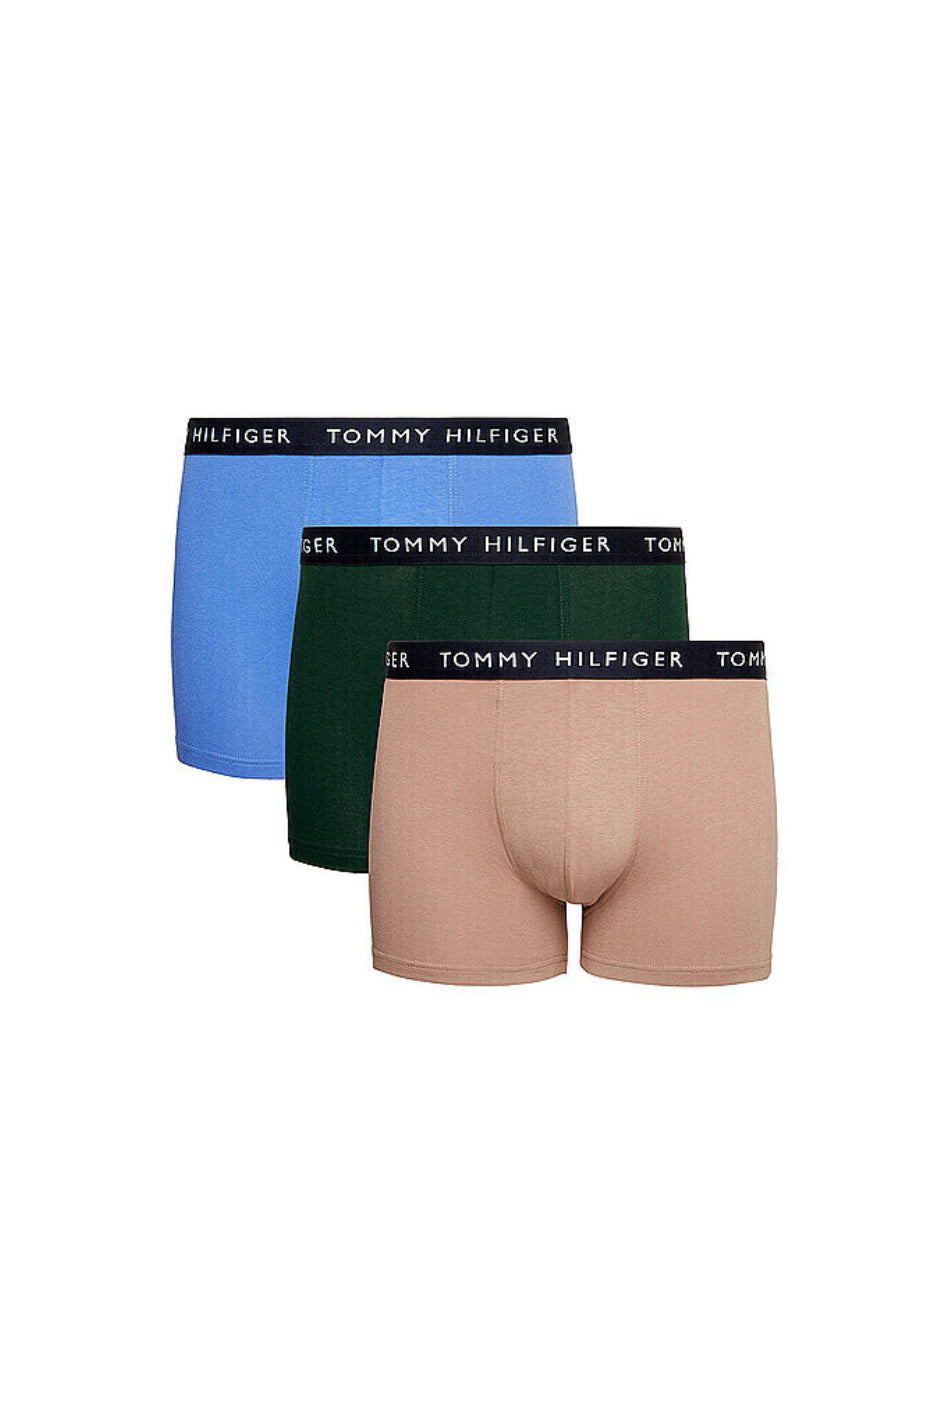 Tommy Hilfiger 3 Pack Men's Trunk